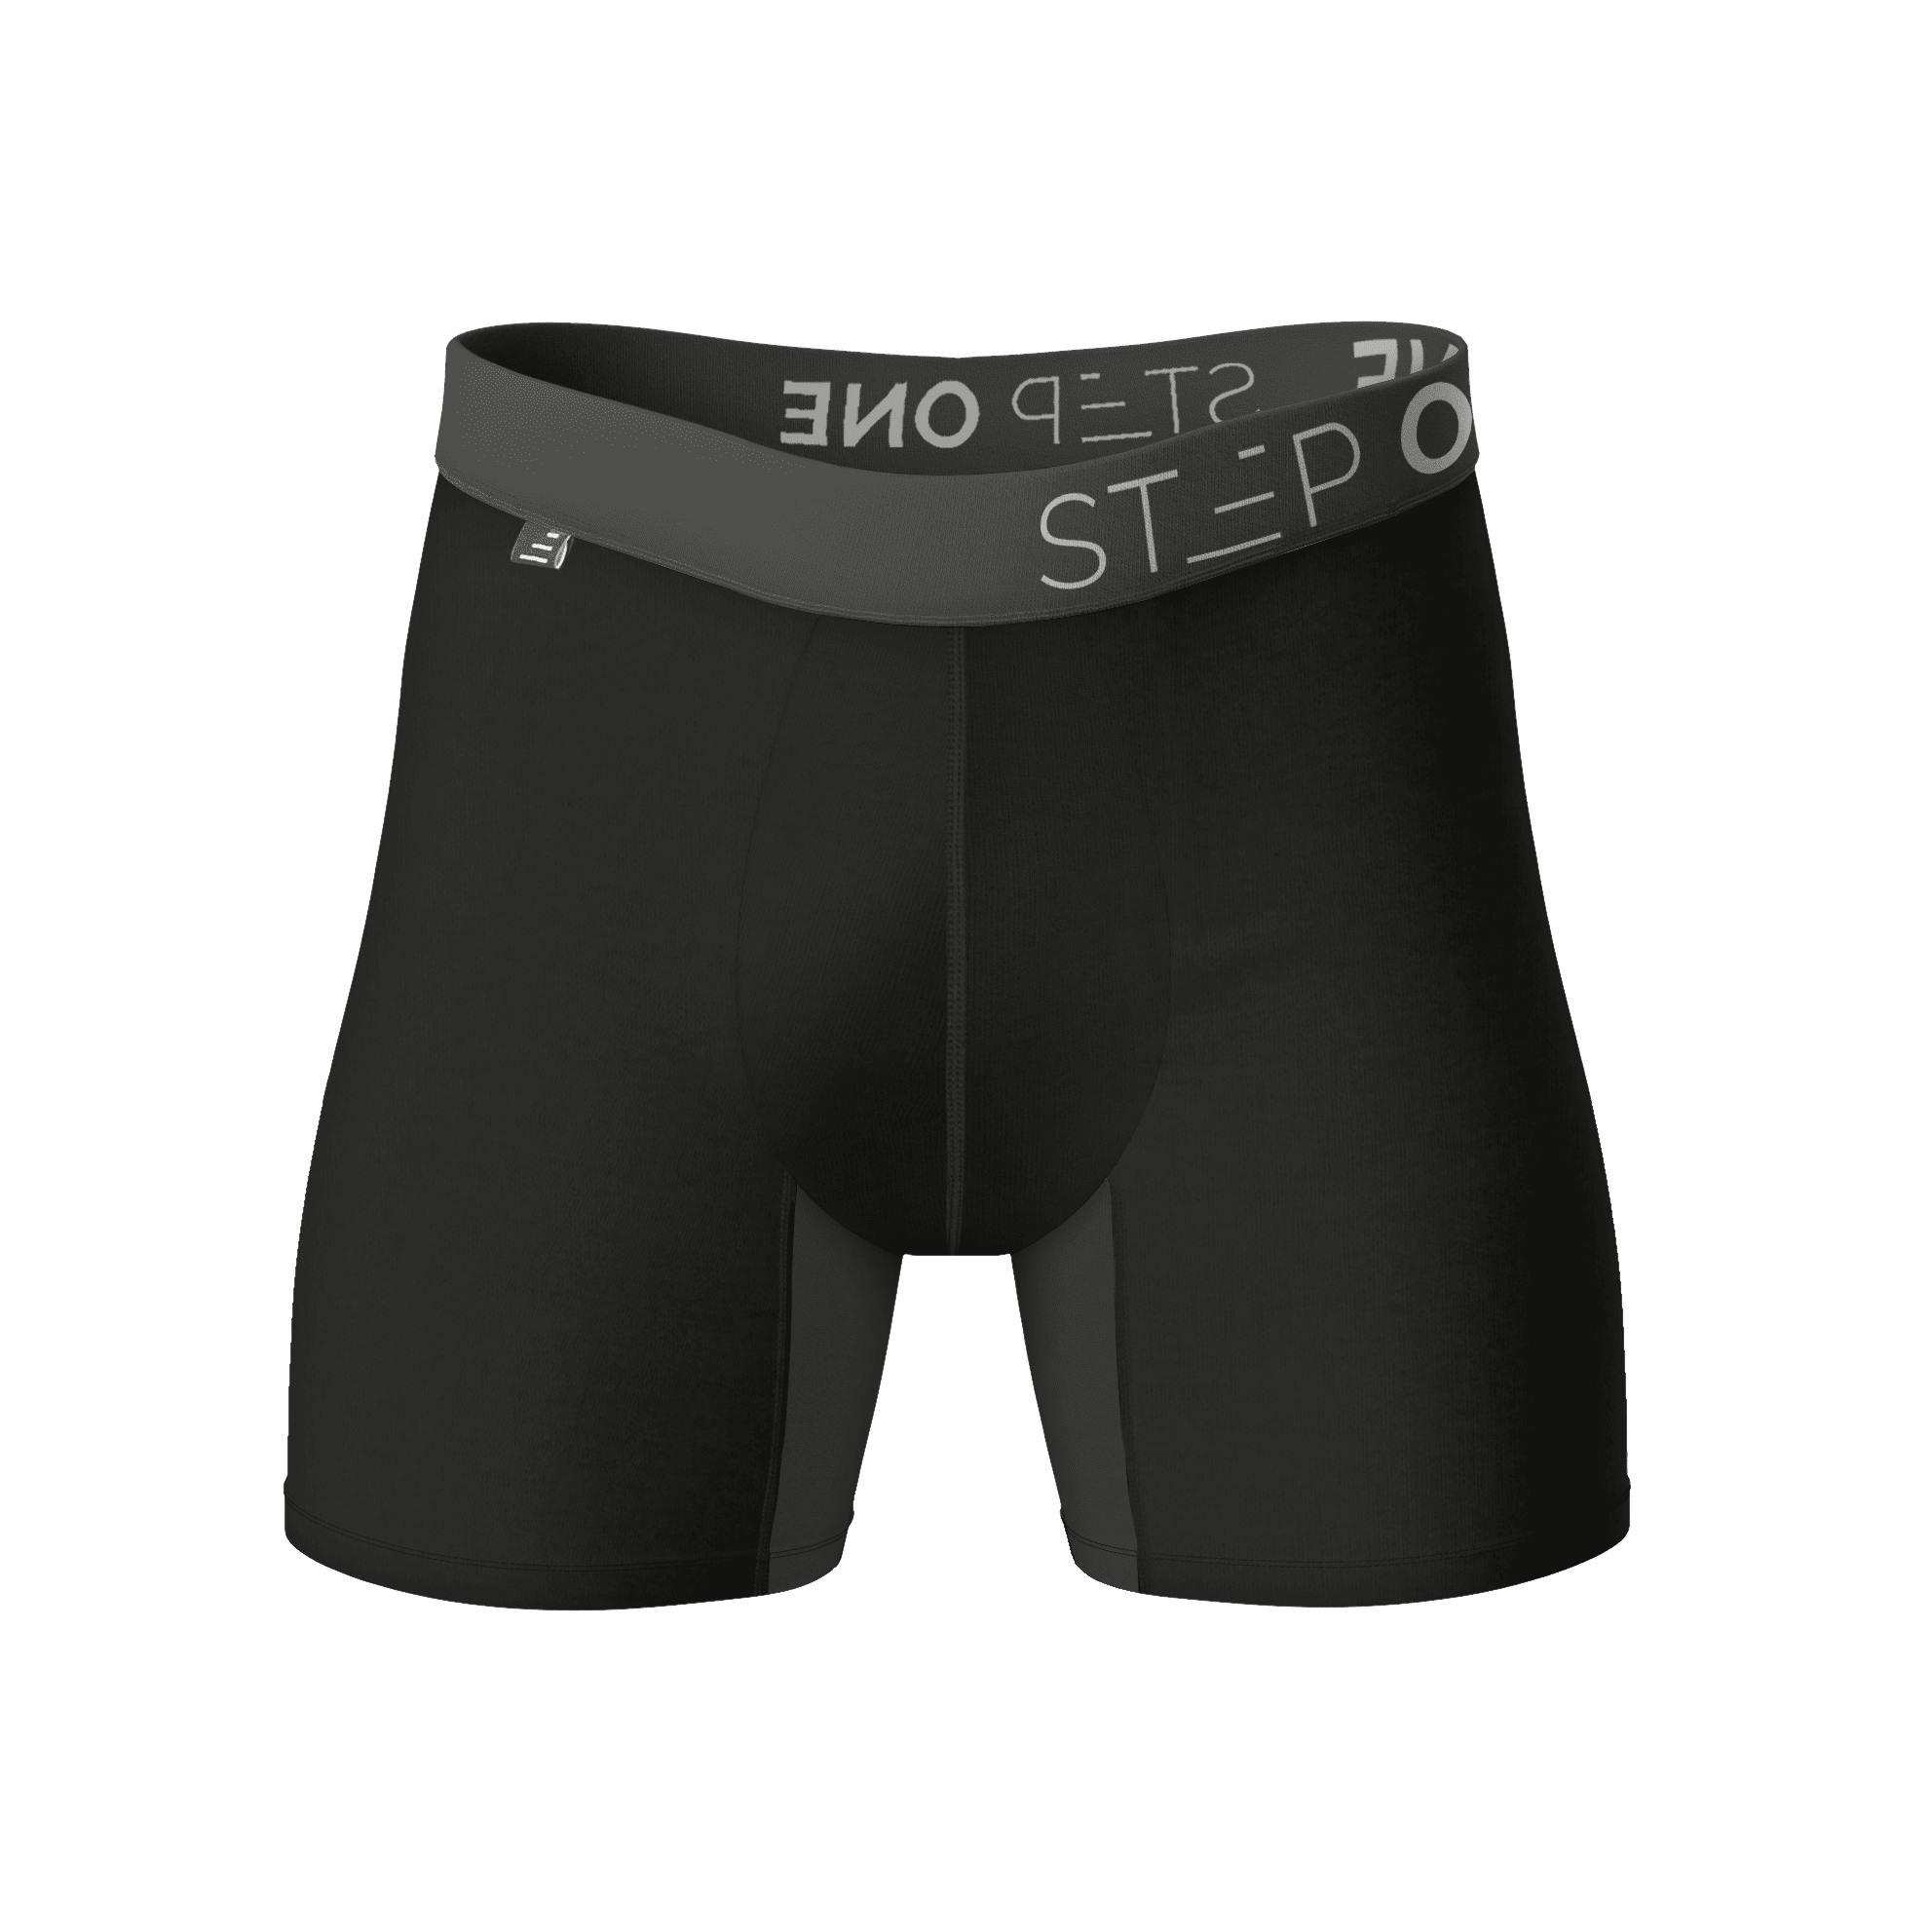 Men's Smooth Front Open Boxer Brief, Men's Underwear